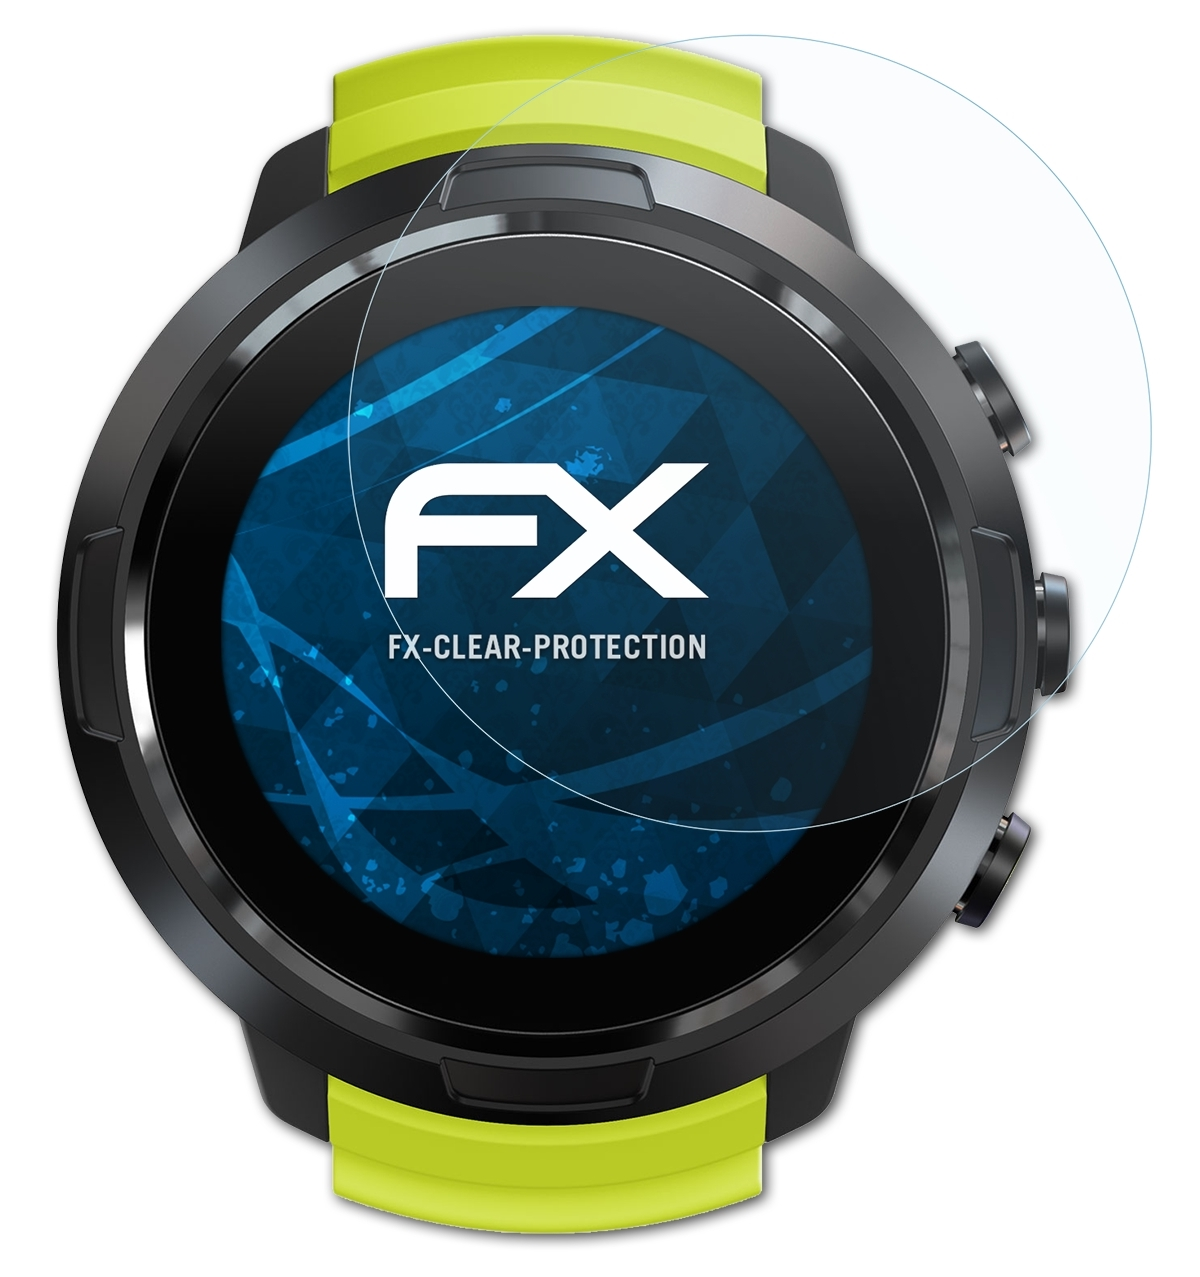 3x FX-Clear ATFOLIX Suunto Displayschutz(für D5)